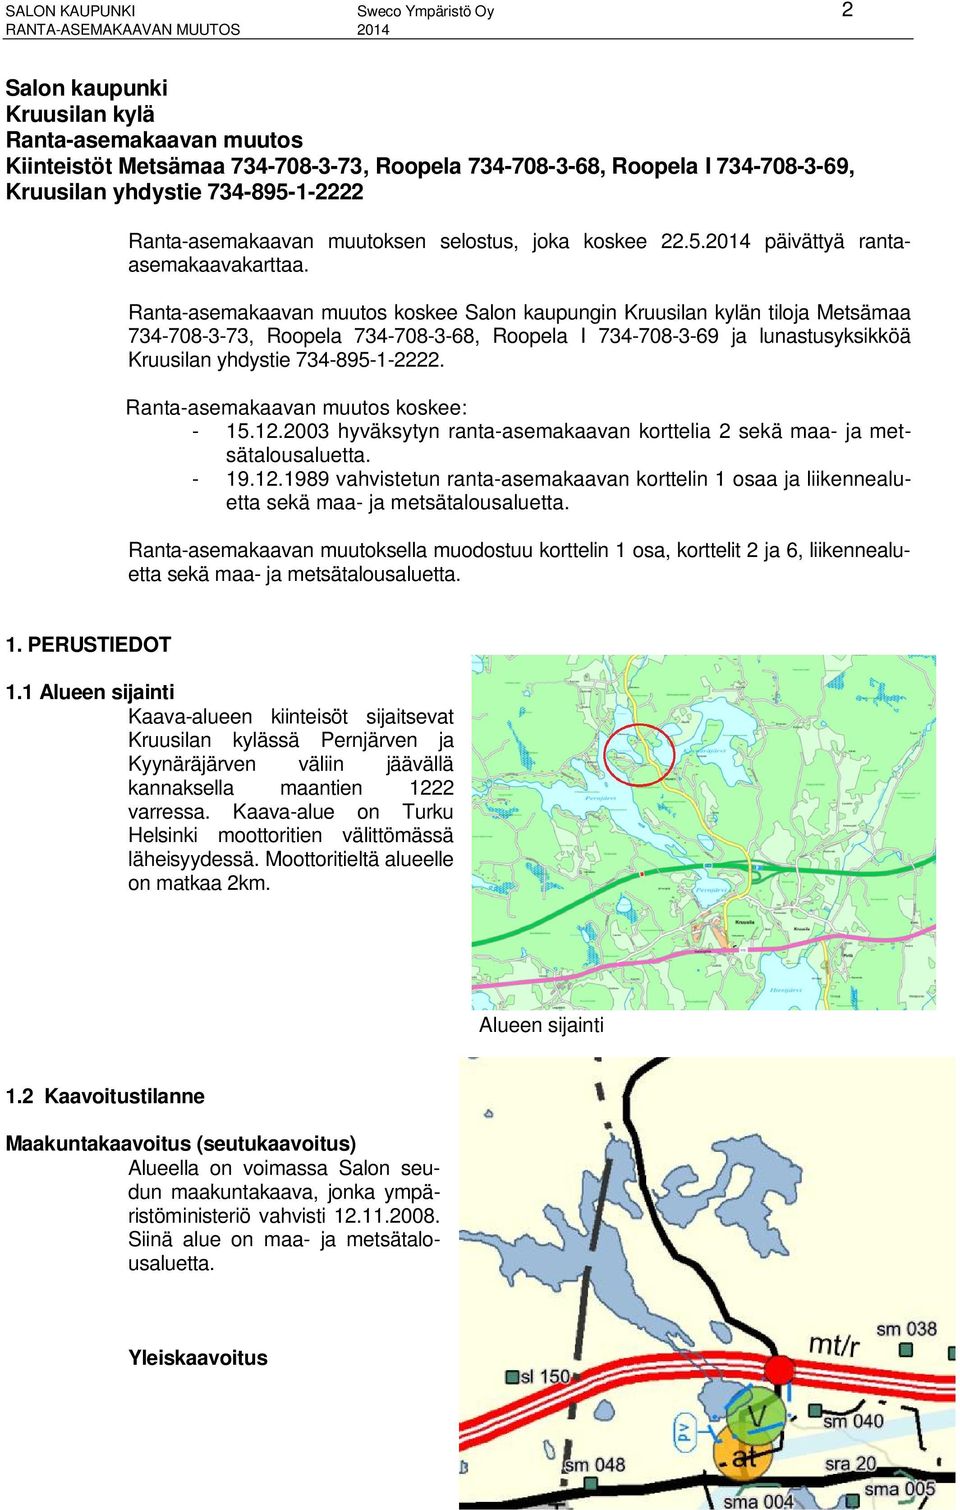 Ranta-asemakaavan muutos koskee Salon kaupungin Kruusilan kylän tiloja Metsämaa 734-708-3-73, Roopela 734-708-3-68, Roopela I 734-708-3-69 ja lunastusyksikköä Kruusilan yhdystie 734-895-1-2222.